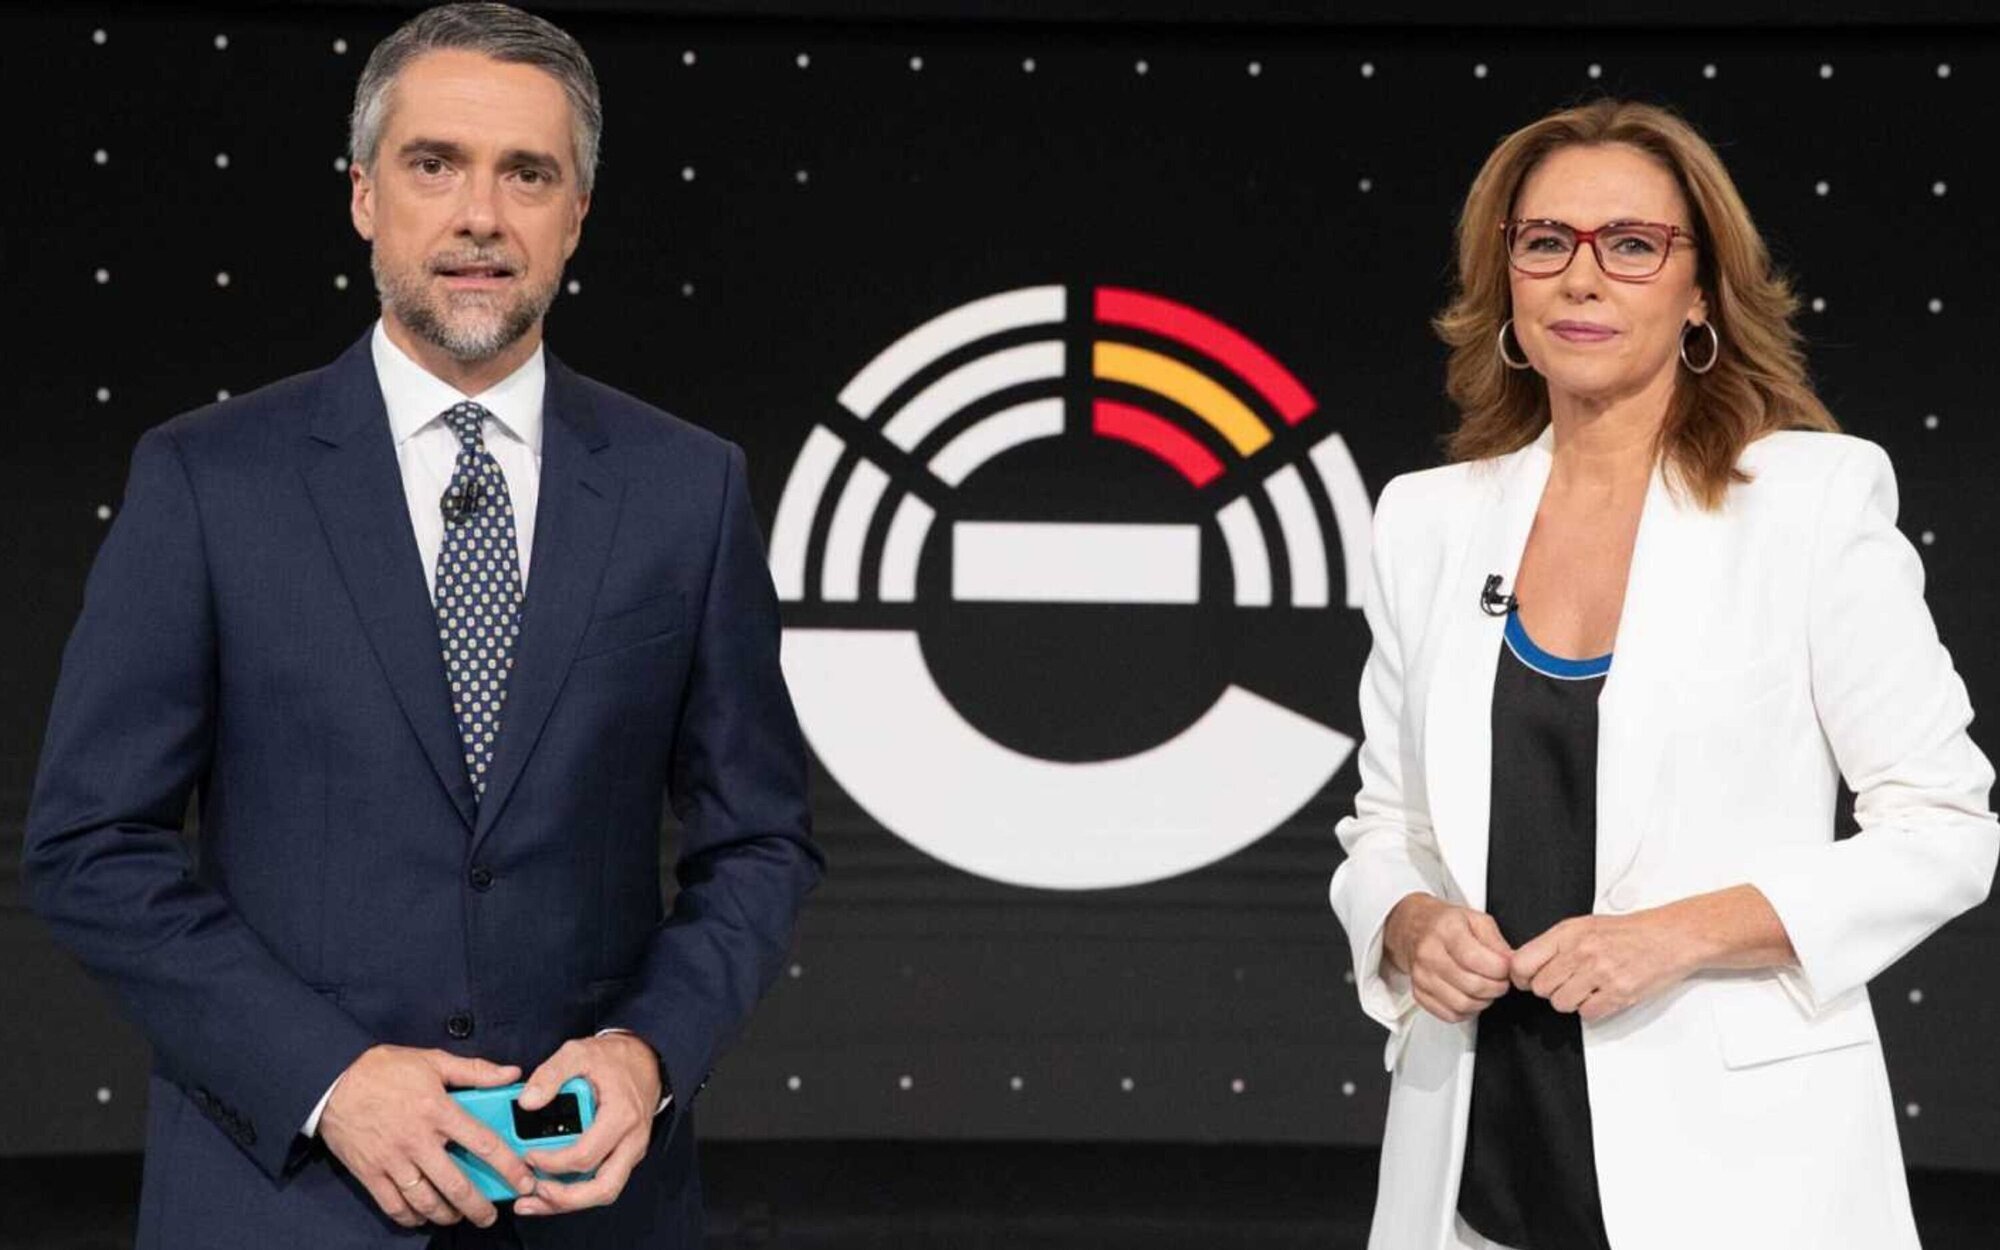 El especial elecciones de La 1 (15,4%) lidera frente a laSexta (13,4%), Antena 3 (13,6%) y Telecinco (7,2%) 